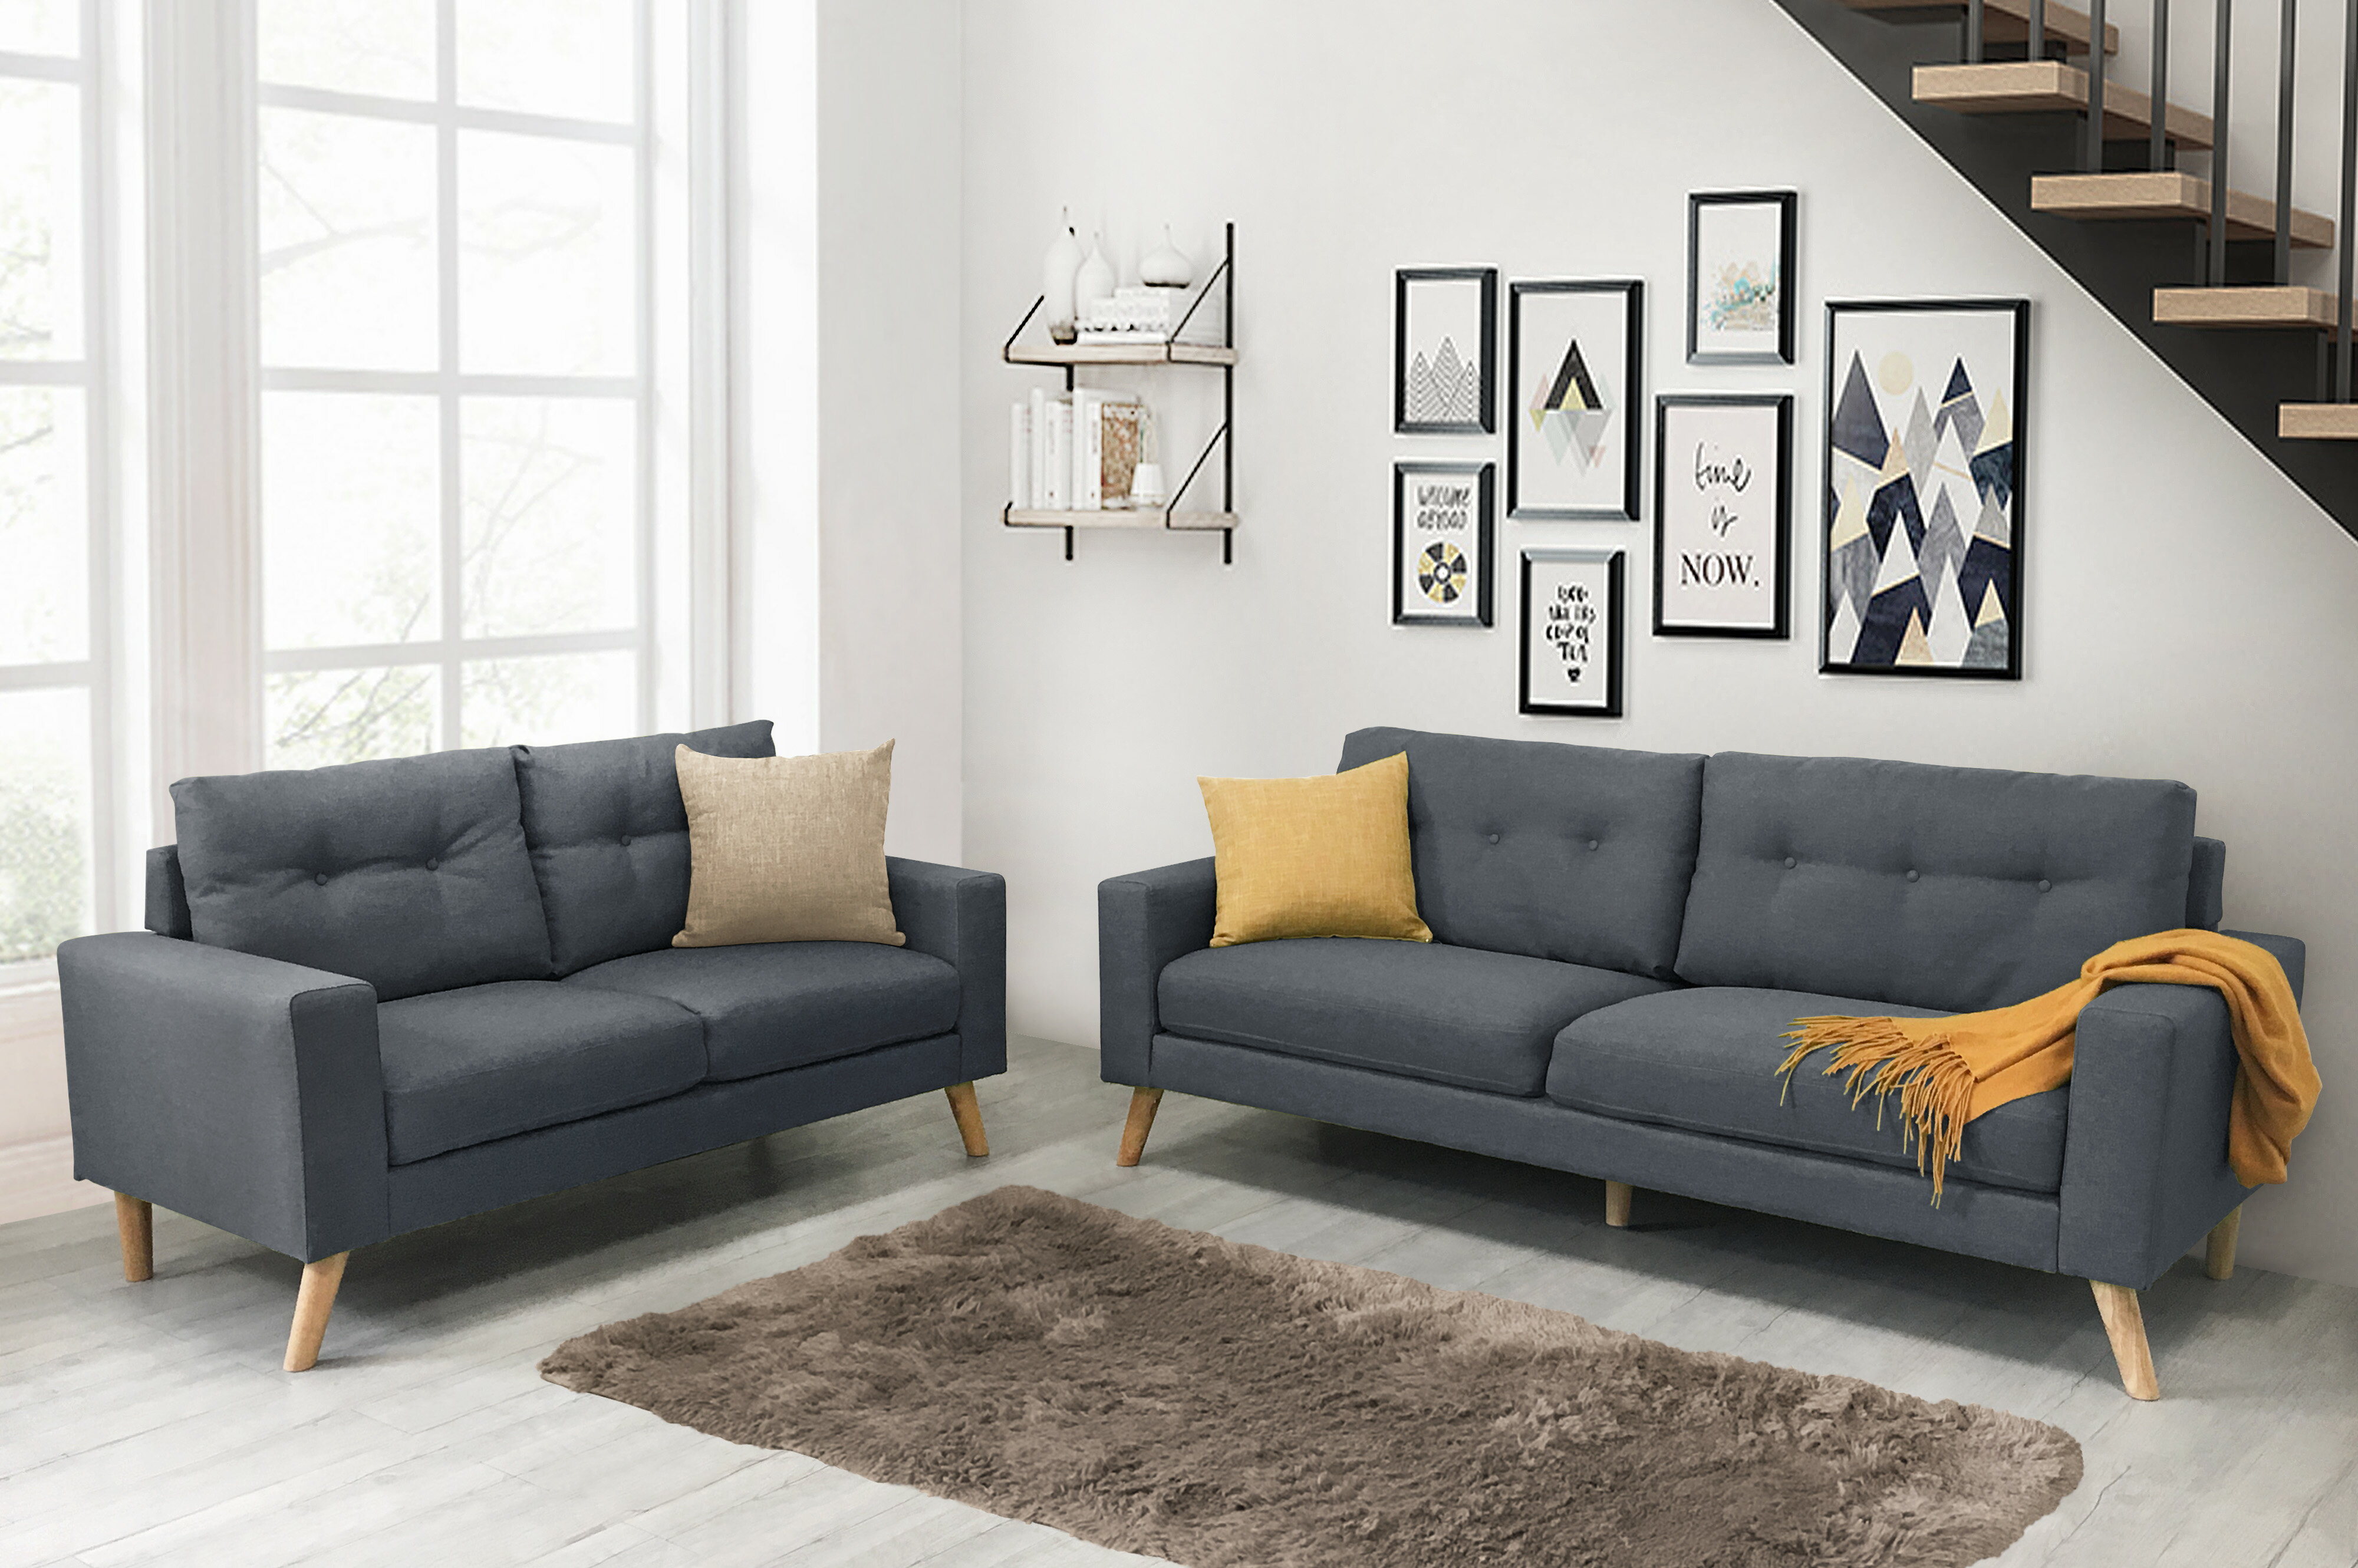 《翡翠》 新品 灰色 3+2沙發組 布沙發 三人座 二人座 亞麻布 日式 清新 自然 套房 客廳 工廠直營 【新生活家具】